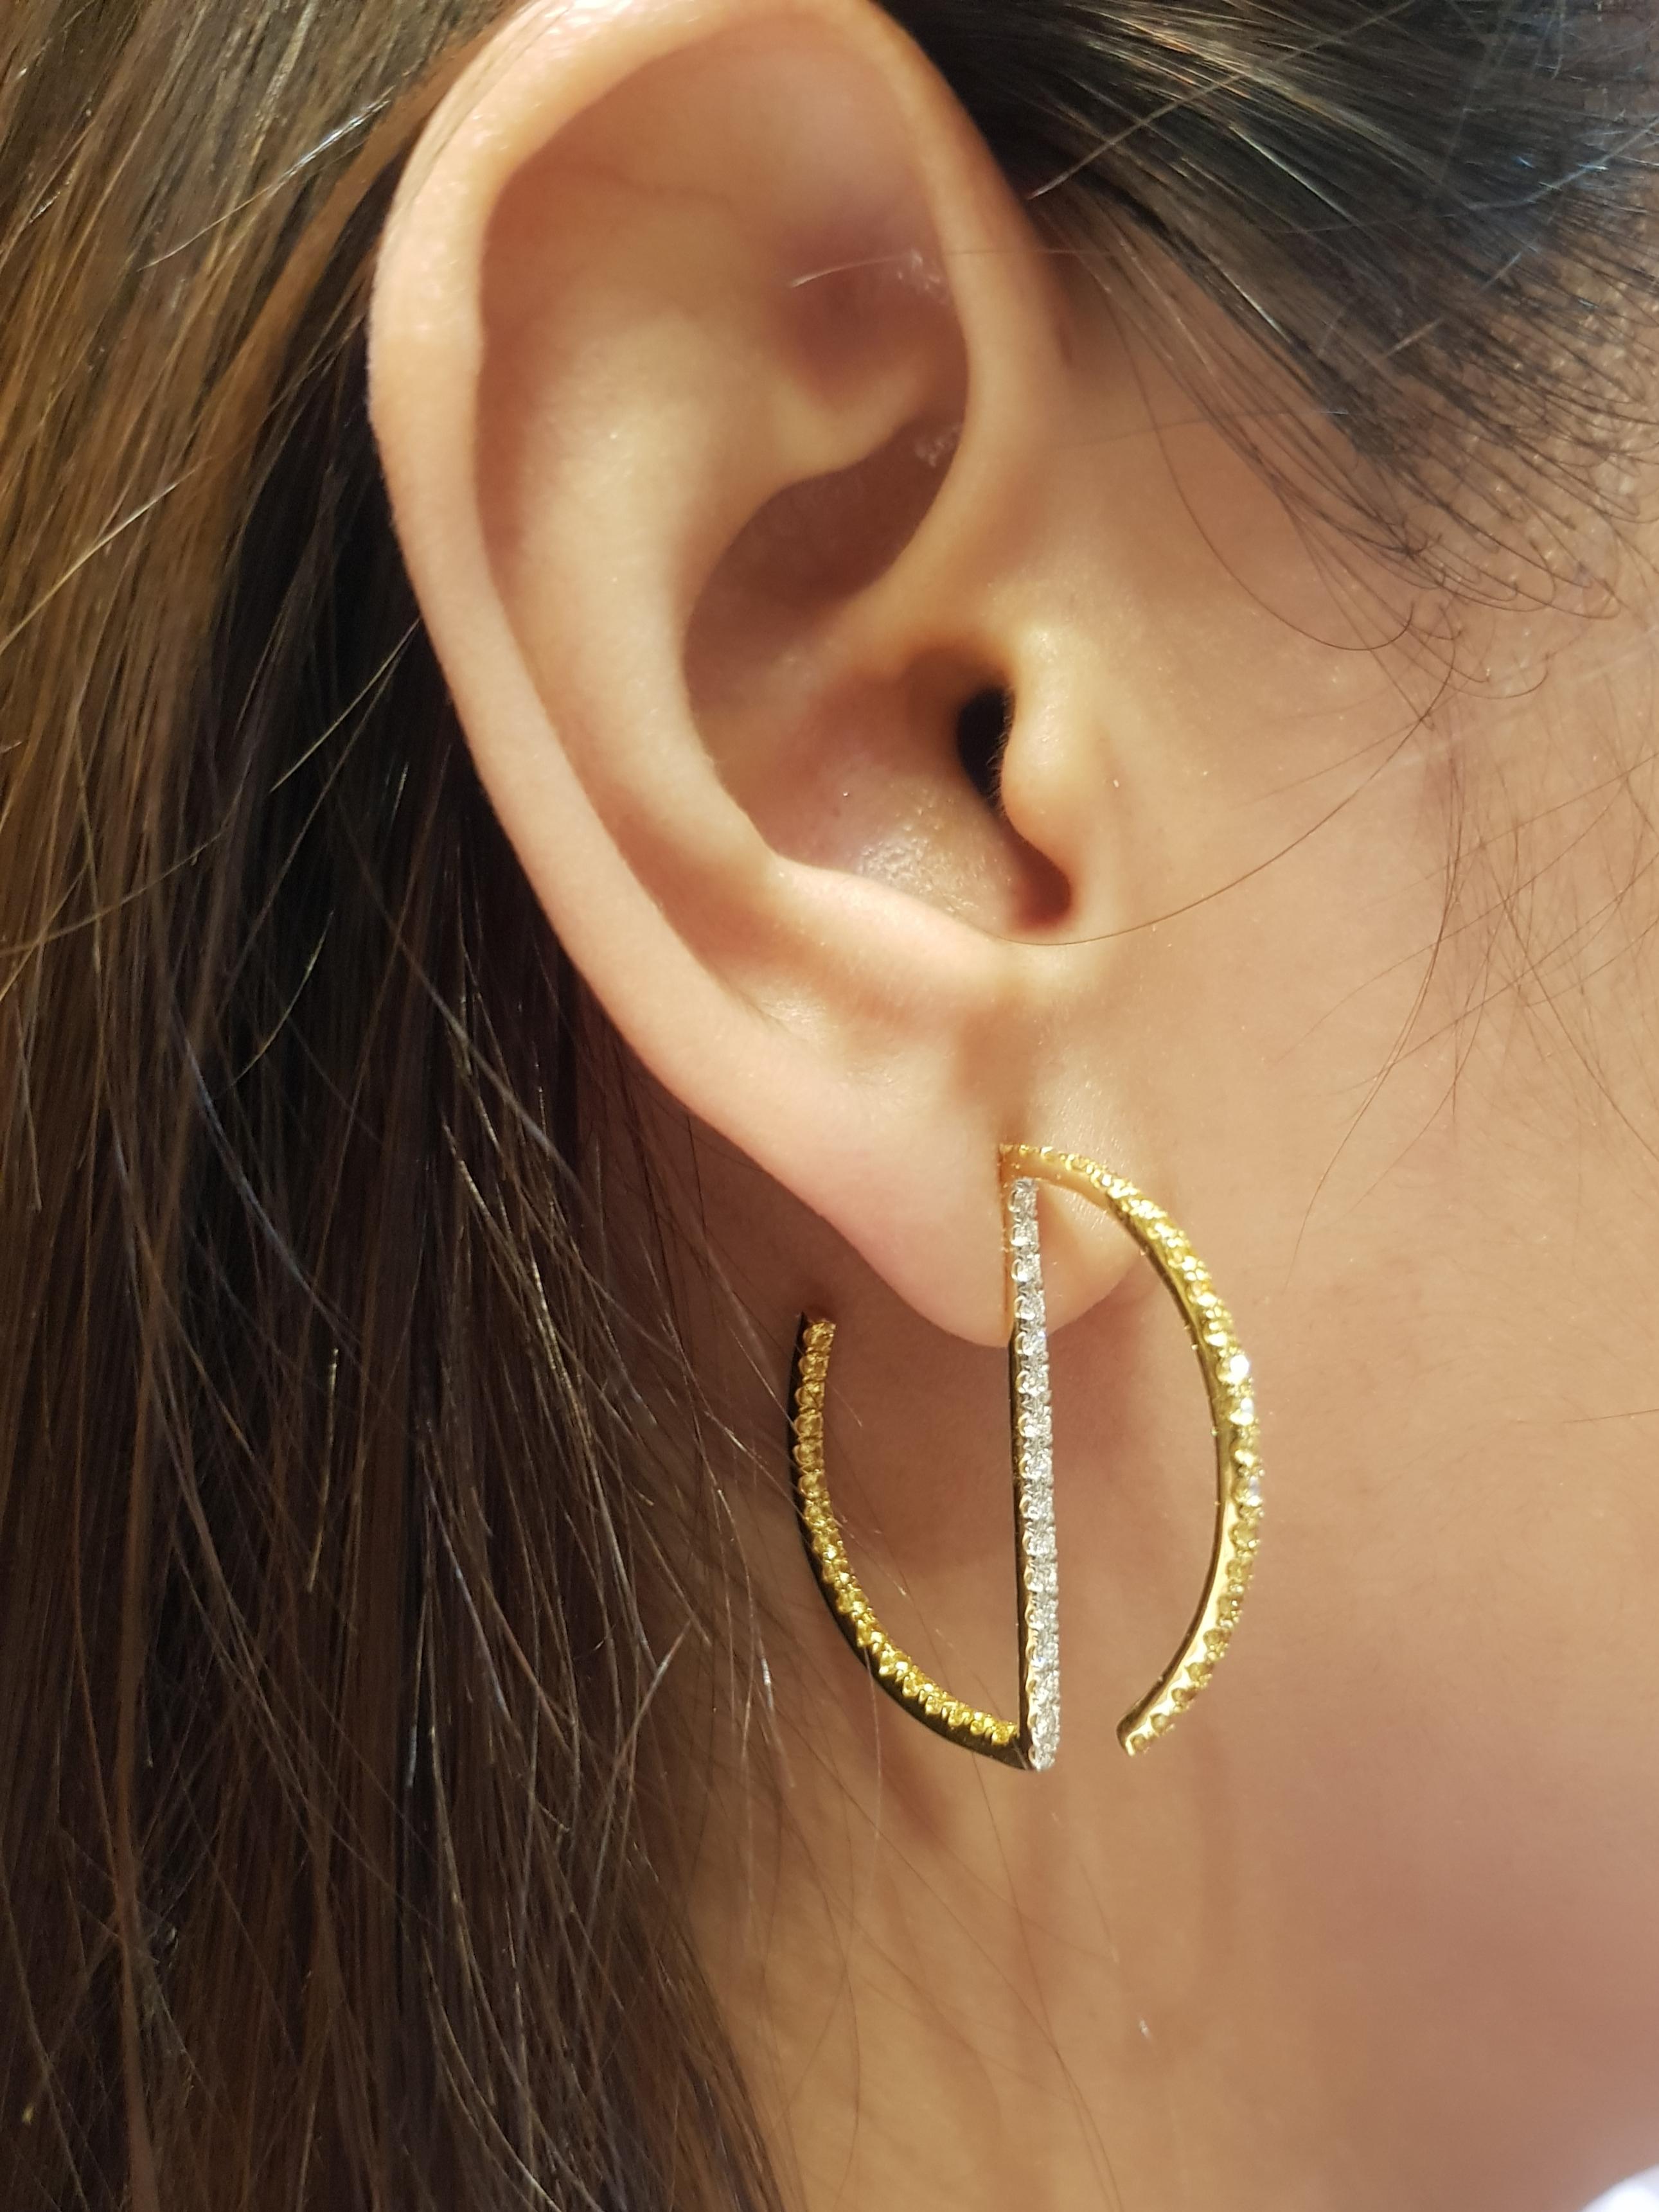 Boucles d'oreilles composées d'un saphir jaune de 1,17 carat et d'un diamant de 0,43 carat sertis dans une monture en or 18 carats

Largeur :  3.1 cm 
Longueur :  3.3 cm
Poids total : 9,44 grammes

